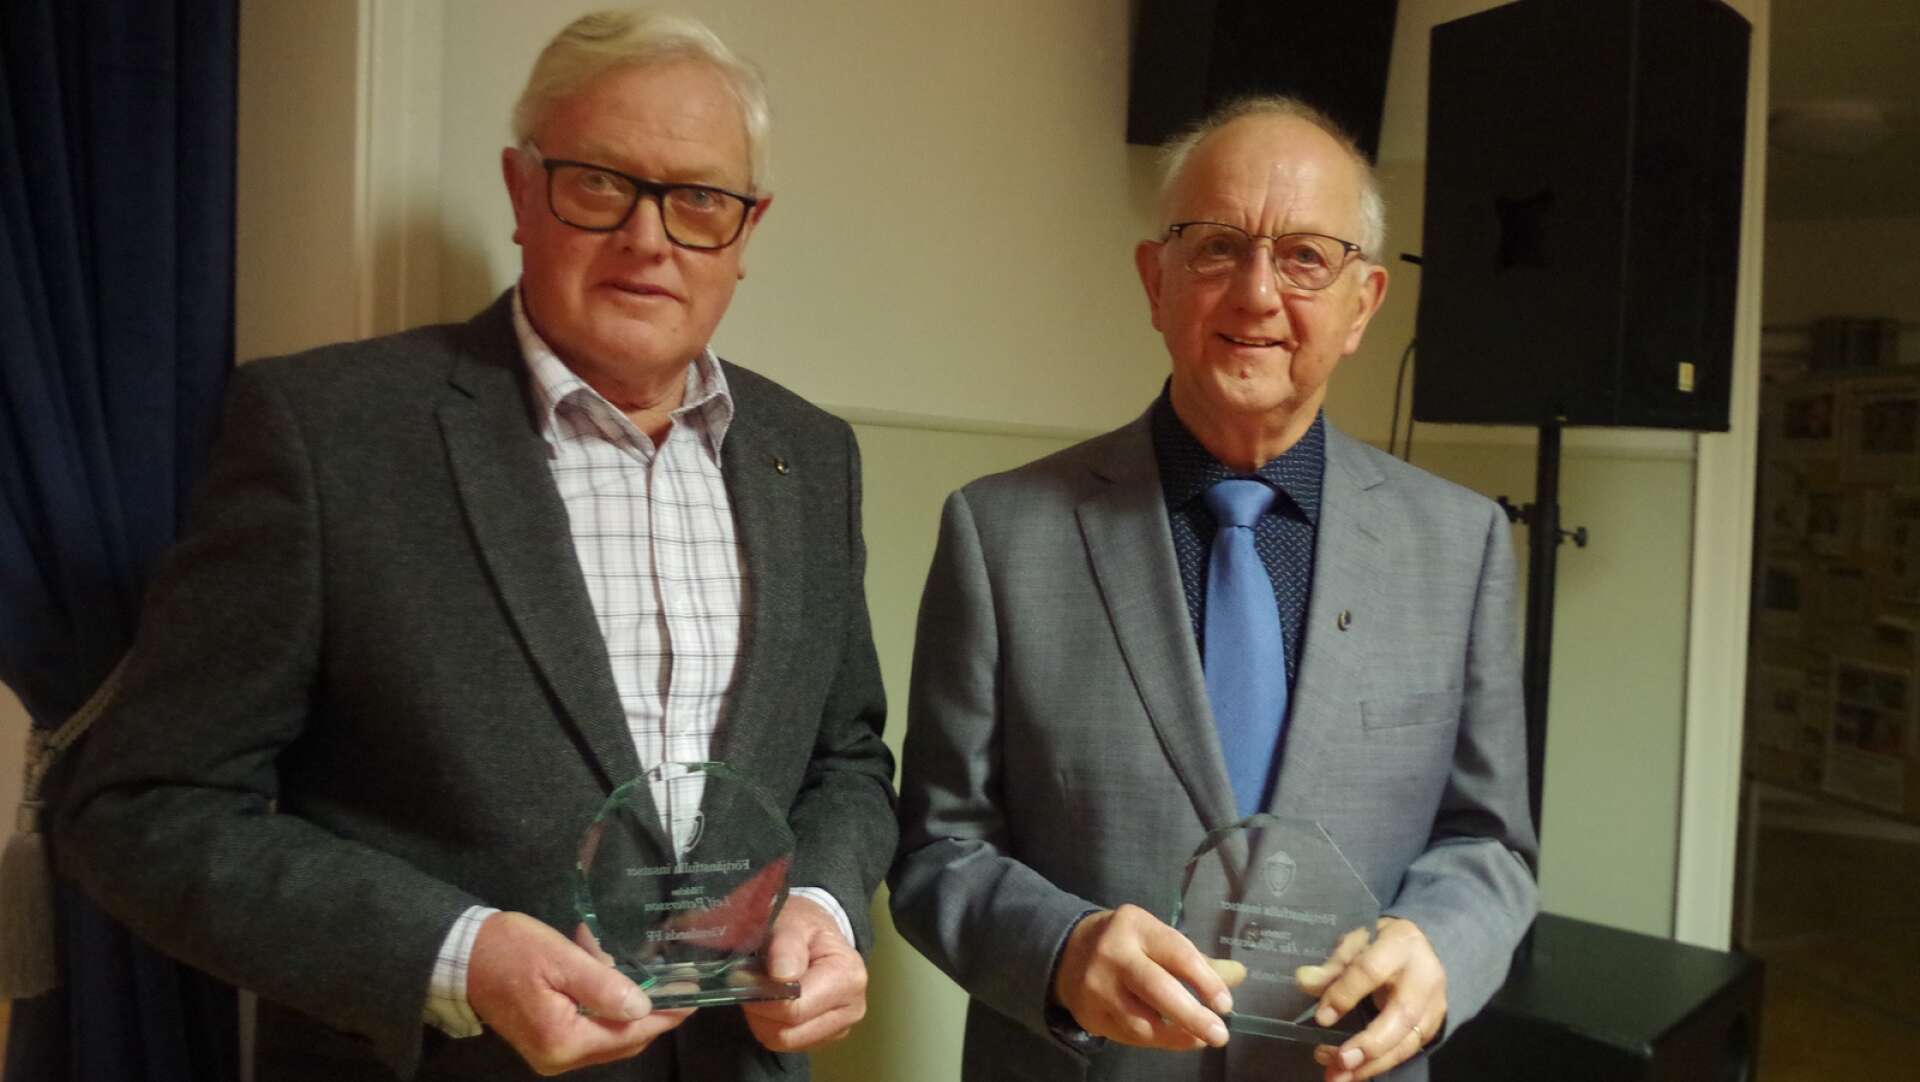 Leif Pettersson t.v samt John-Åke Johansson fick glaspriser från VFF för &quot;Förtjänstfulla insatser&quot; bl.a över tillsammans hundra år i styrelsearbetet.&apos;&apos;